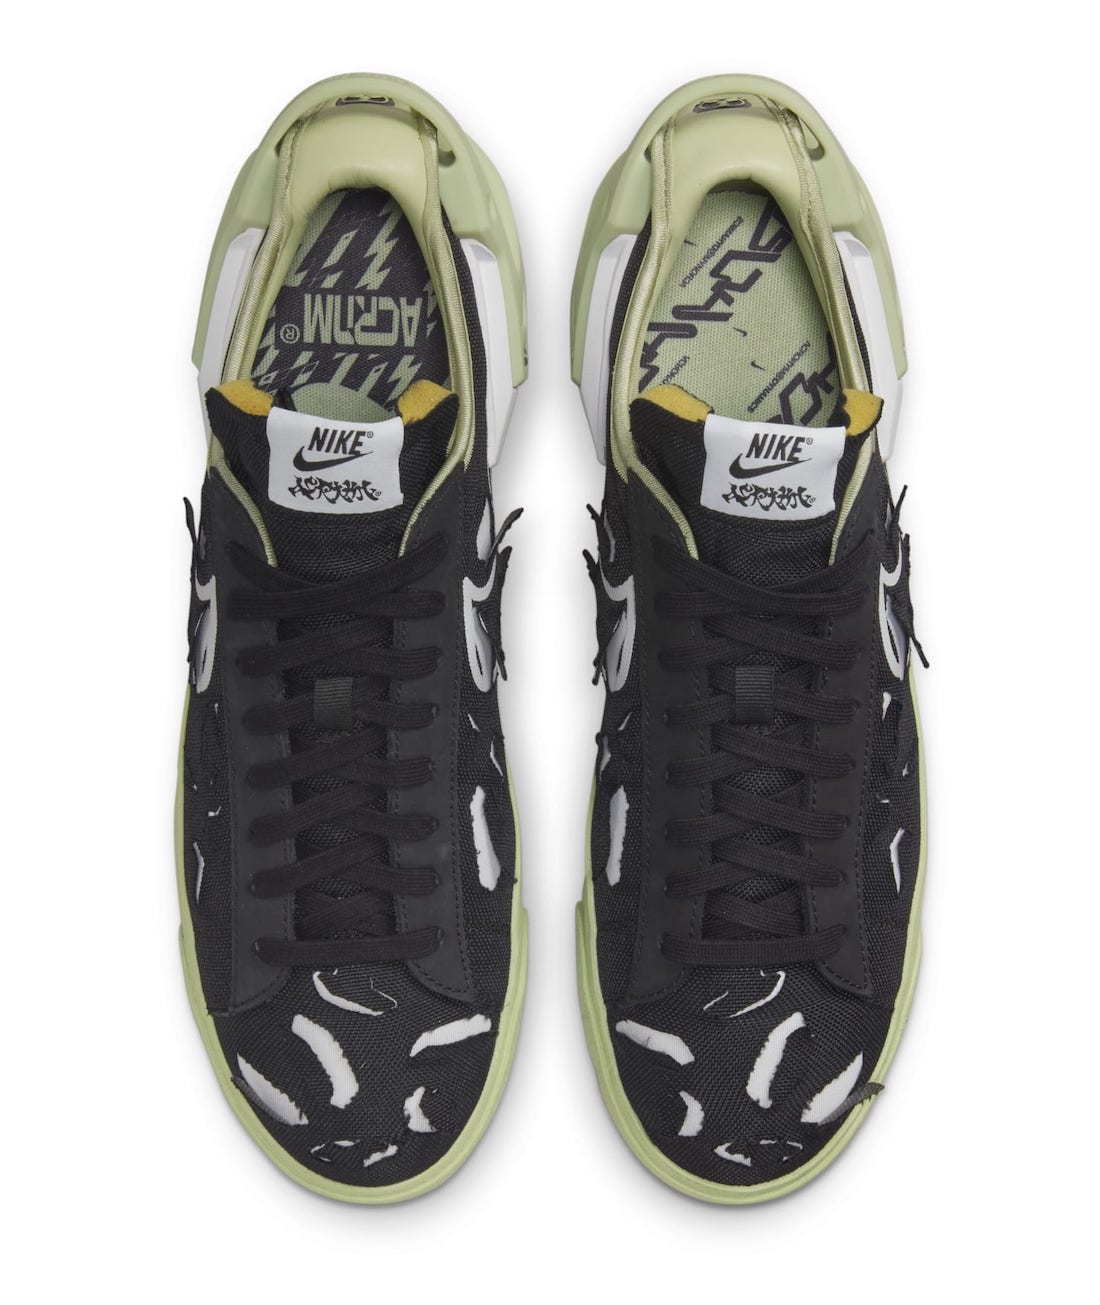 Acronym x Nike Blazer Low Black